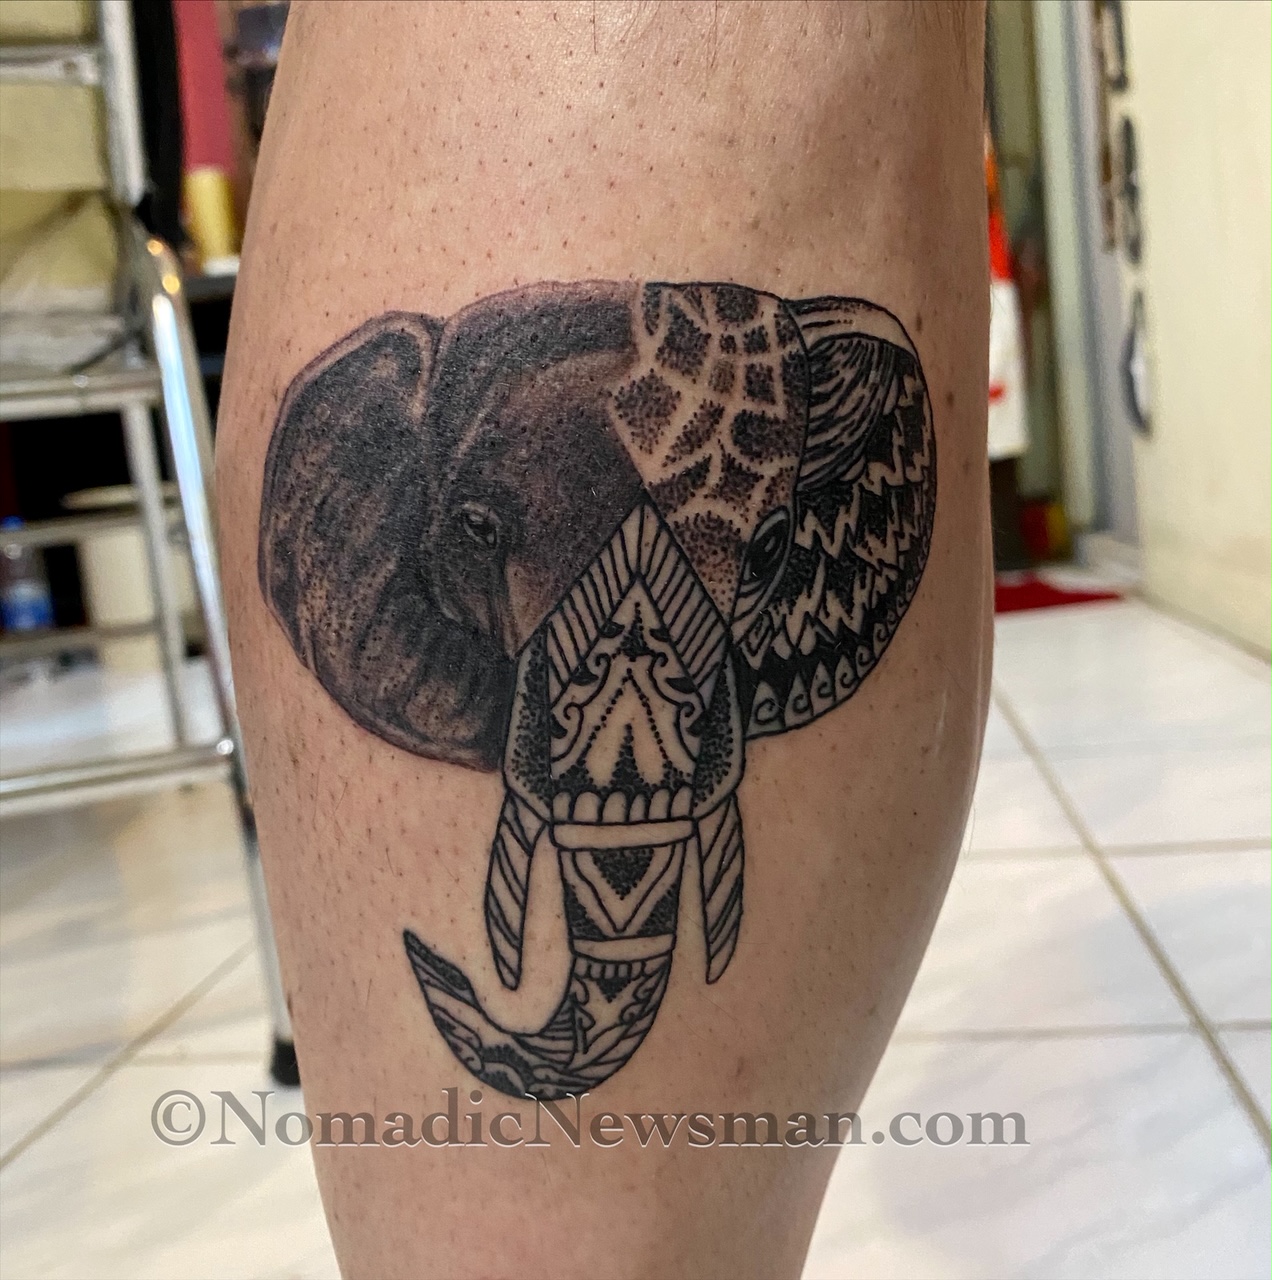 Joey's finished custom elephant tattoo